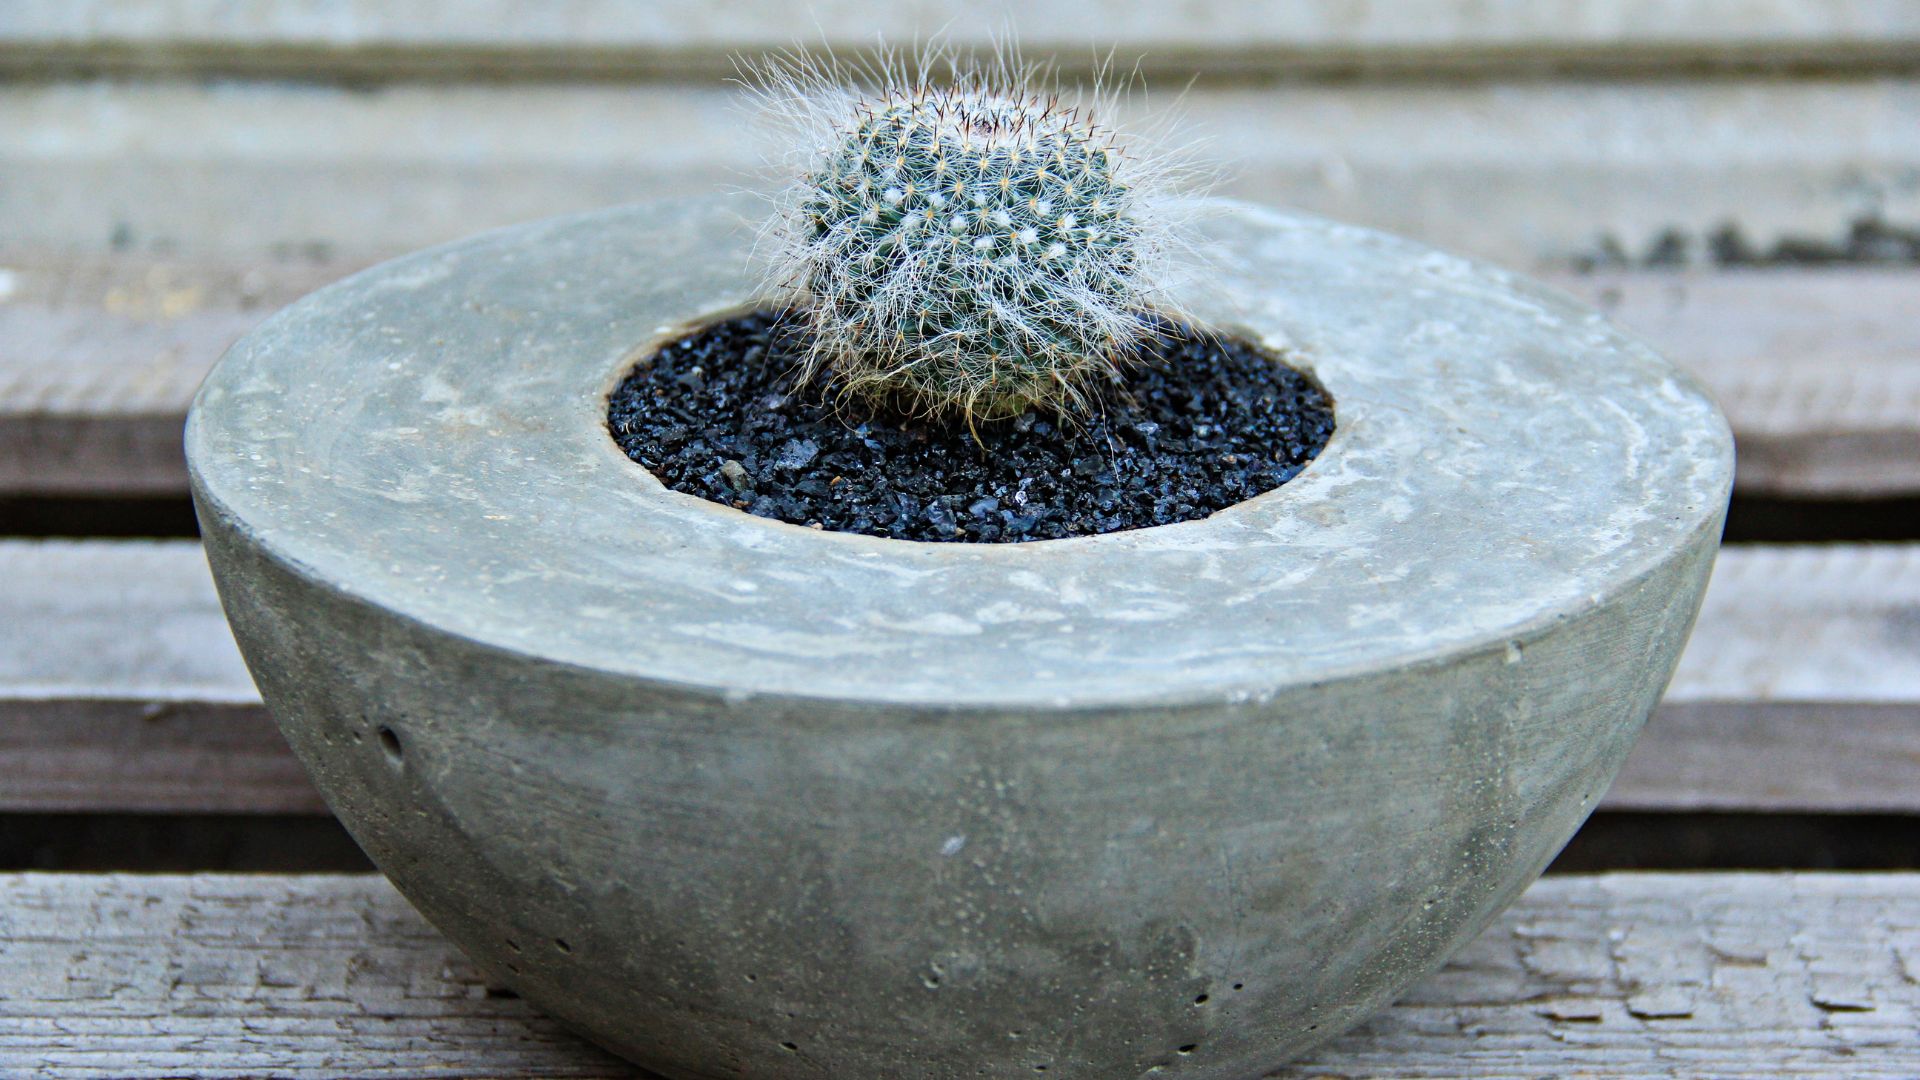 Small cactus in a concrete planter.